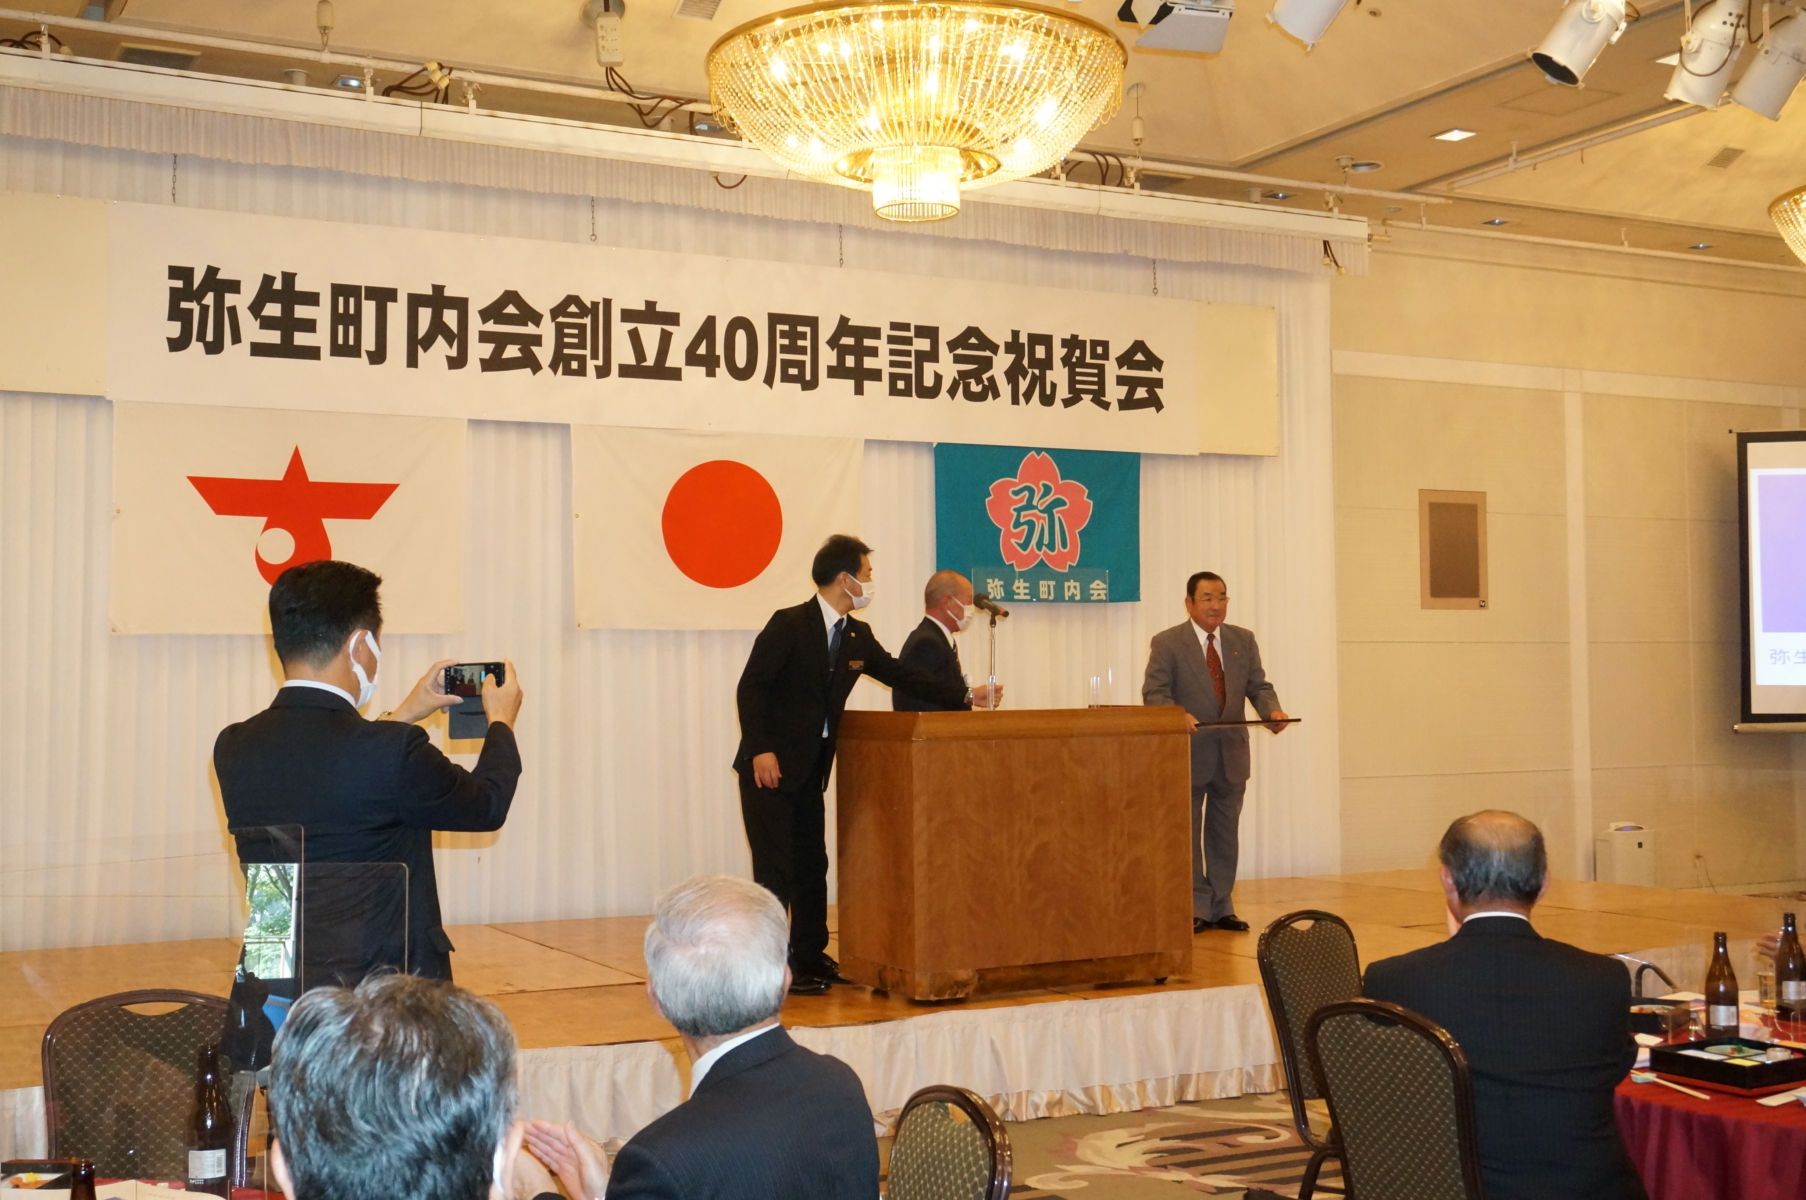 弥生町内会創立40周年記念祝賀会が開催されました。